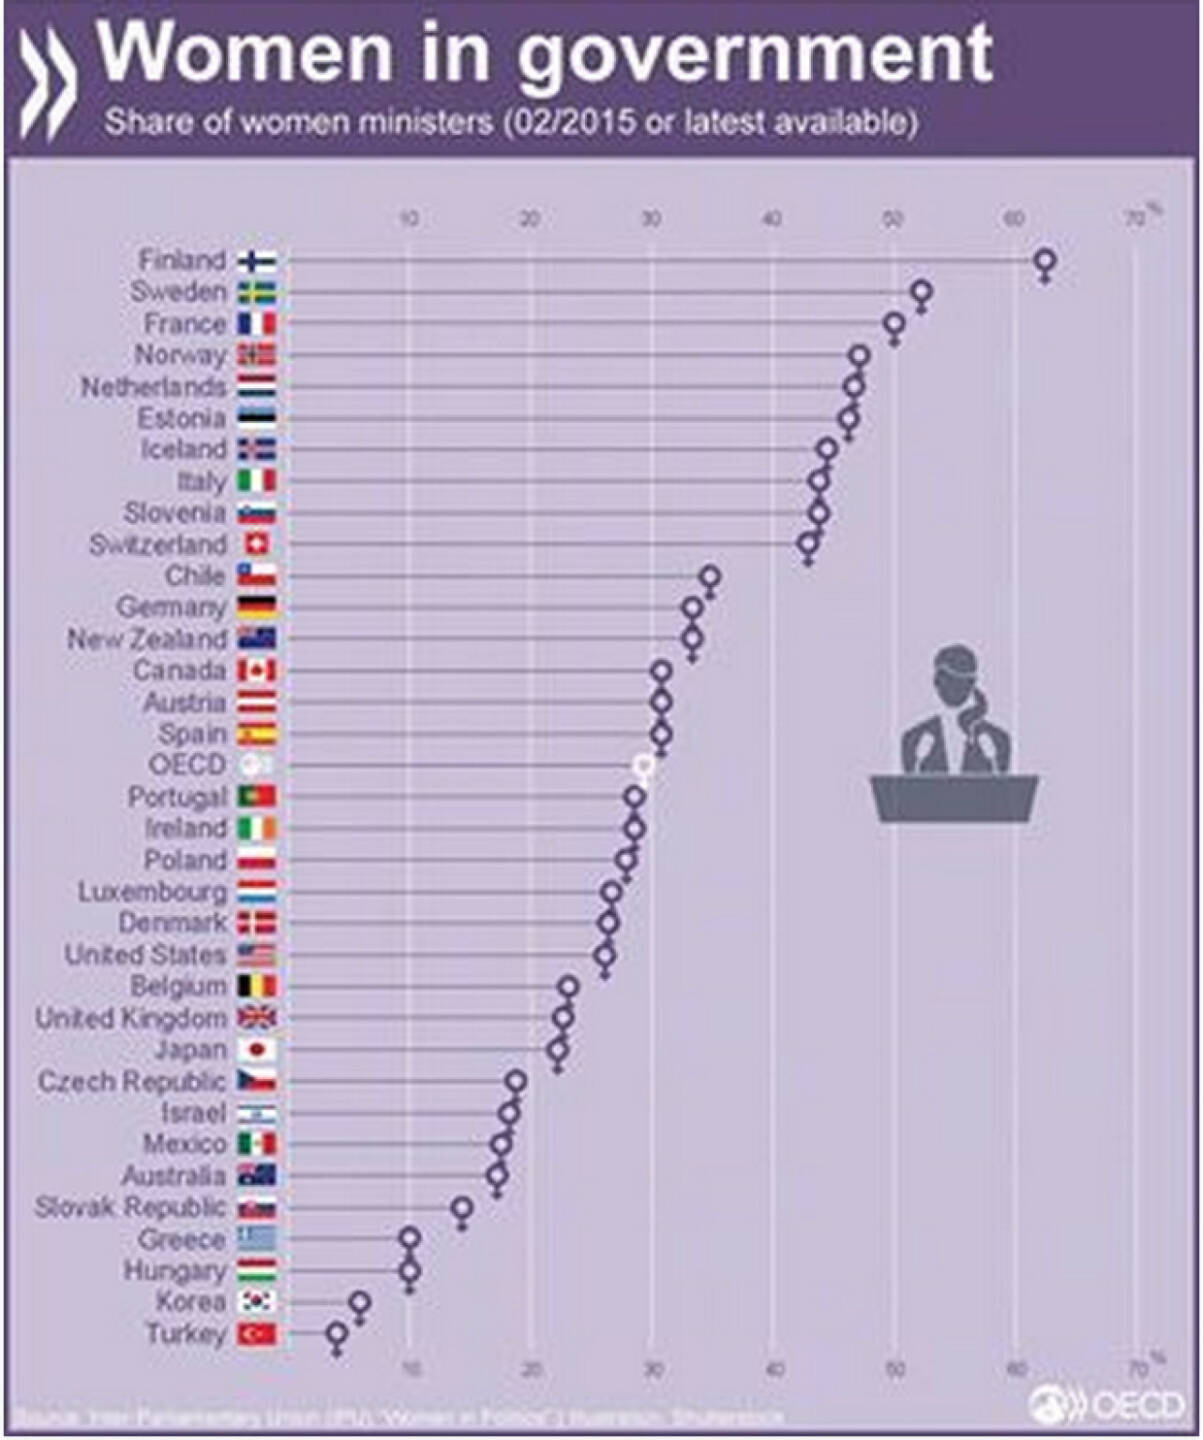 Im Schnitt sind in der OECD nur 30% der Ministerposten mit Frauen besetzt. Mehr unter: http://bit.ly/1hahPsZ